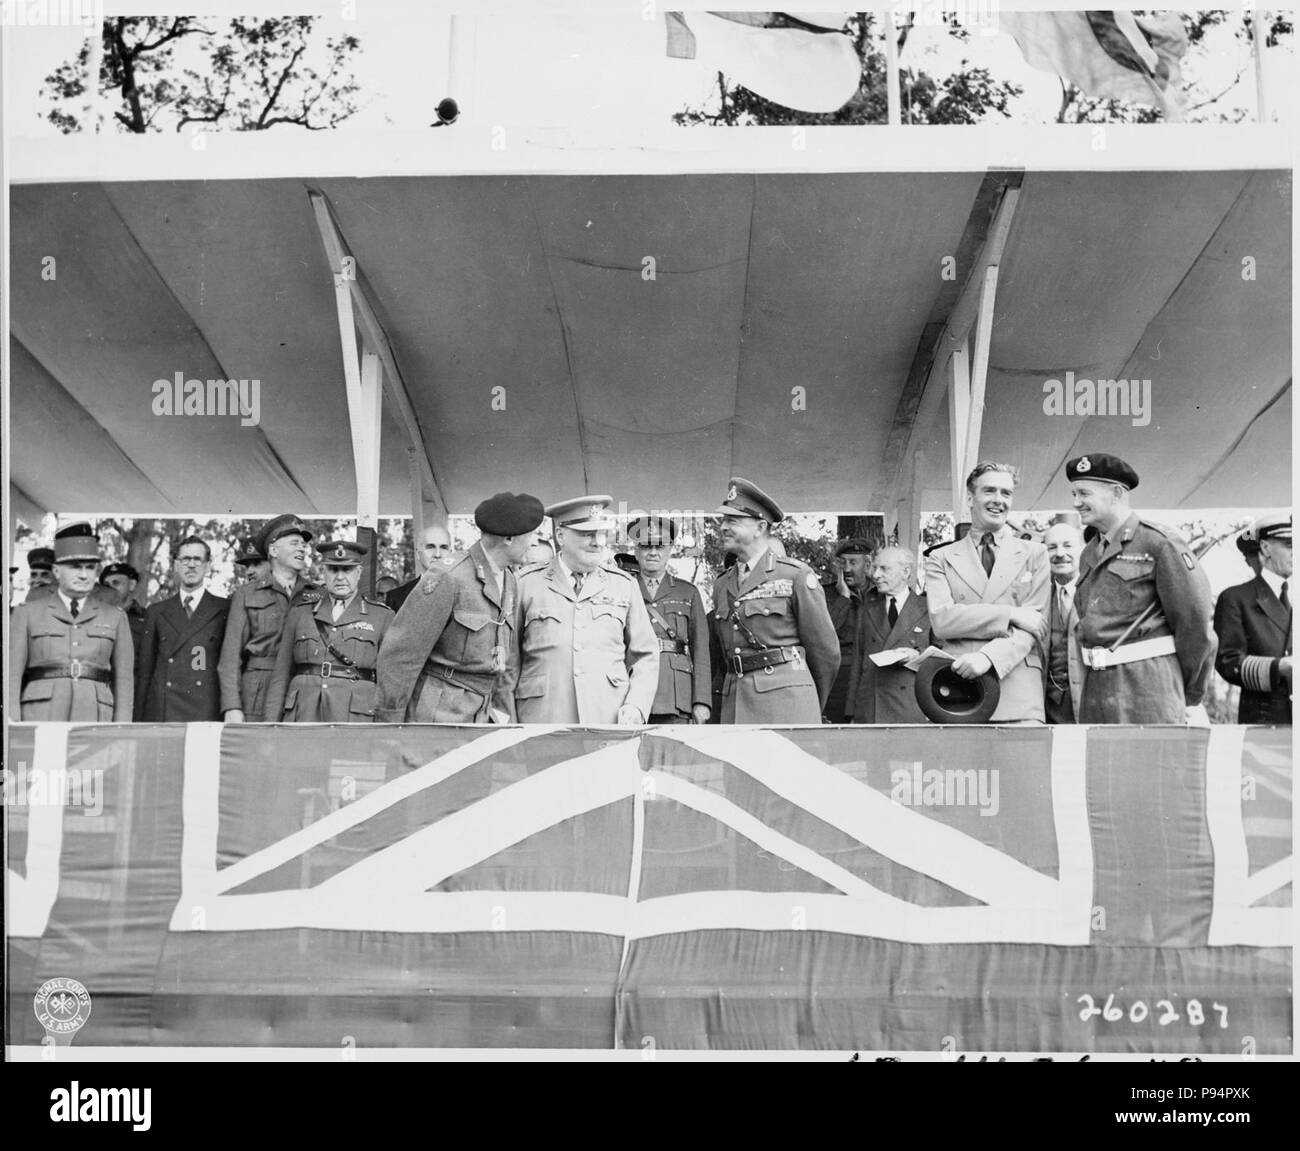 Eine Gruppe von Prominenten in der Überprüfung stand auf der 'Charlottenberger Chausce" während der britischen Sieg Parade in... - Stockfoto